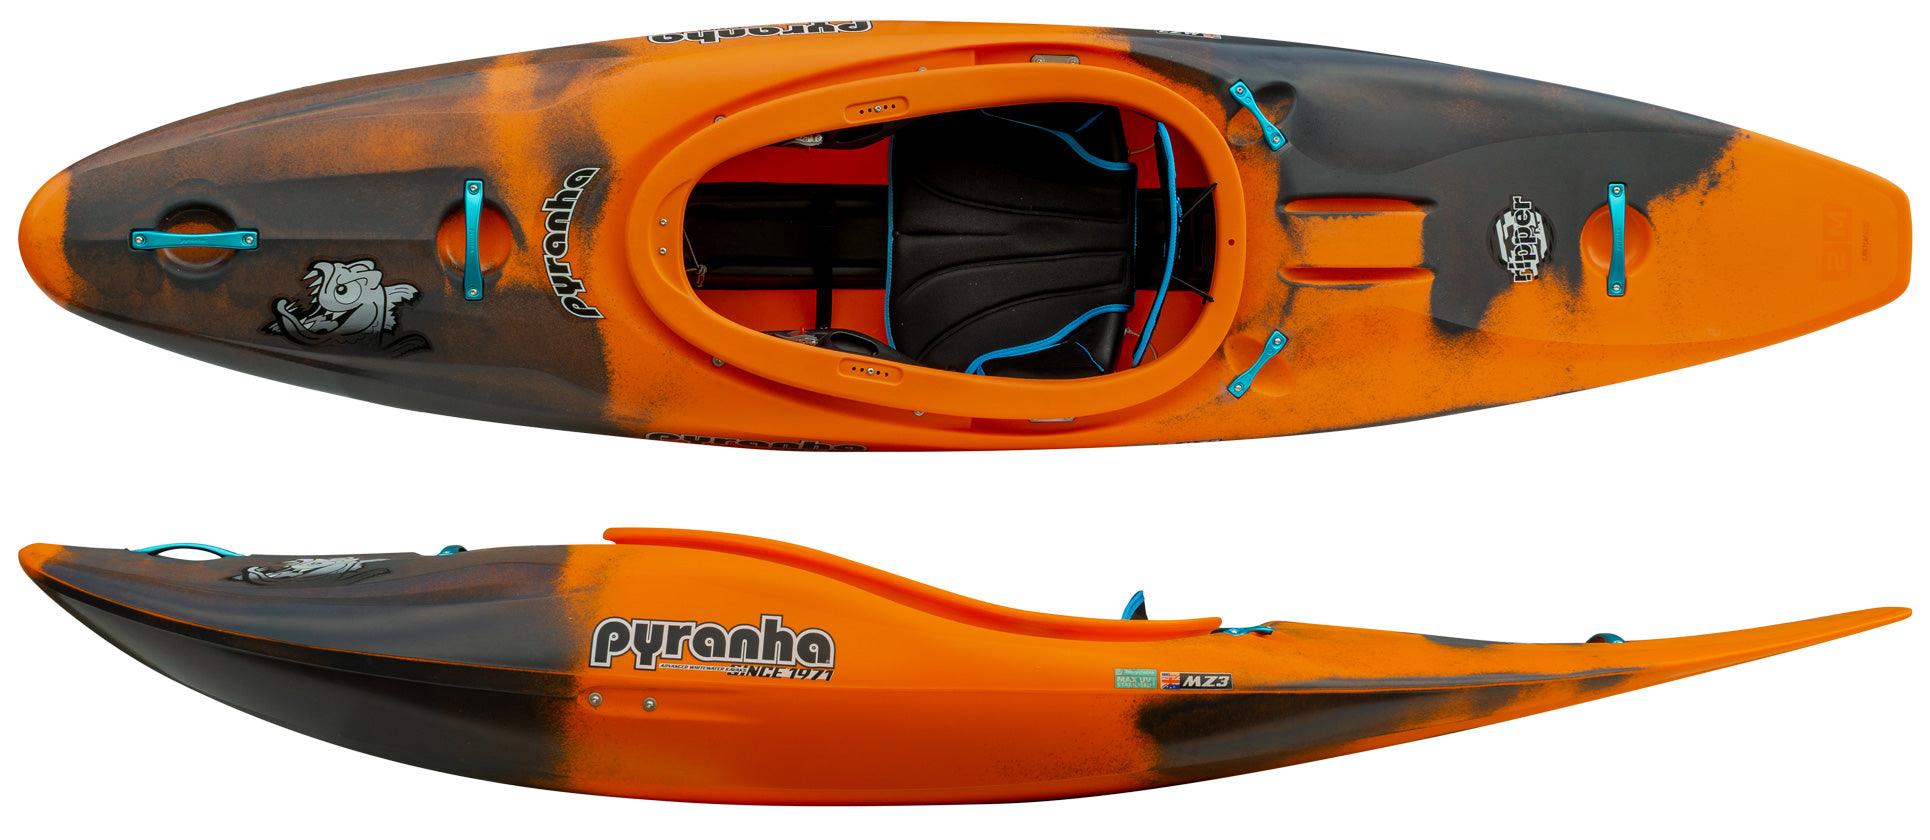 Pyranha Ripper 2 Whitewater Kayak - Festive Water